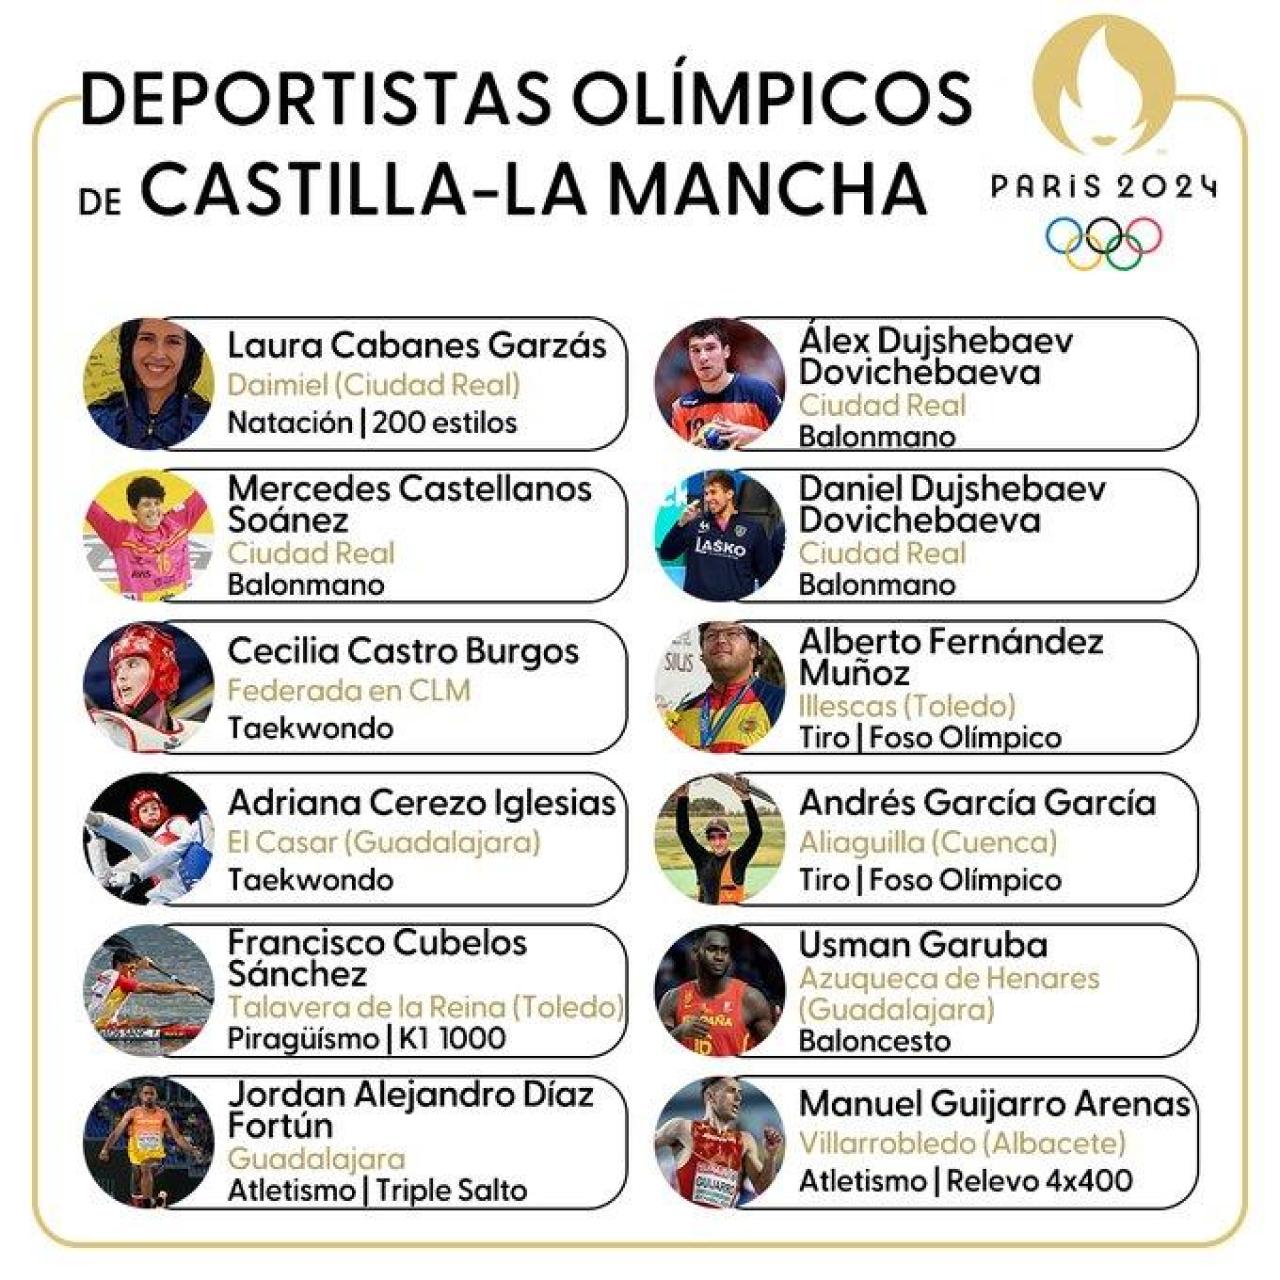 Deportistas olímpicos de Castilla-La Mancha en París 2024.